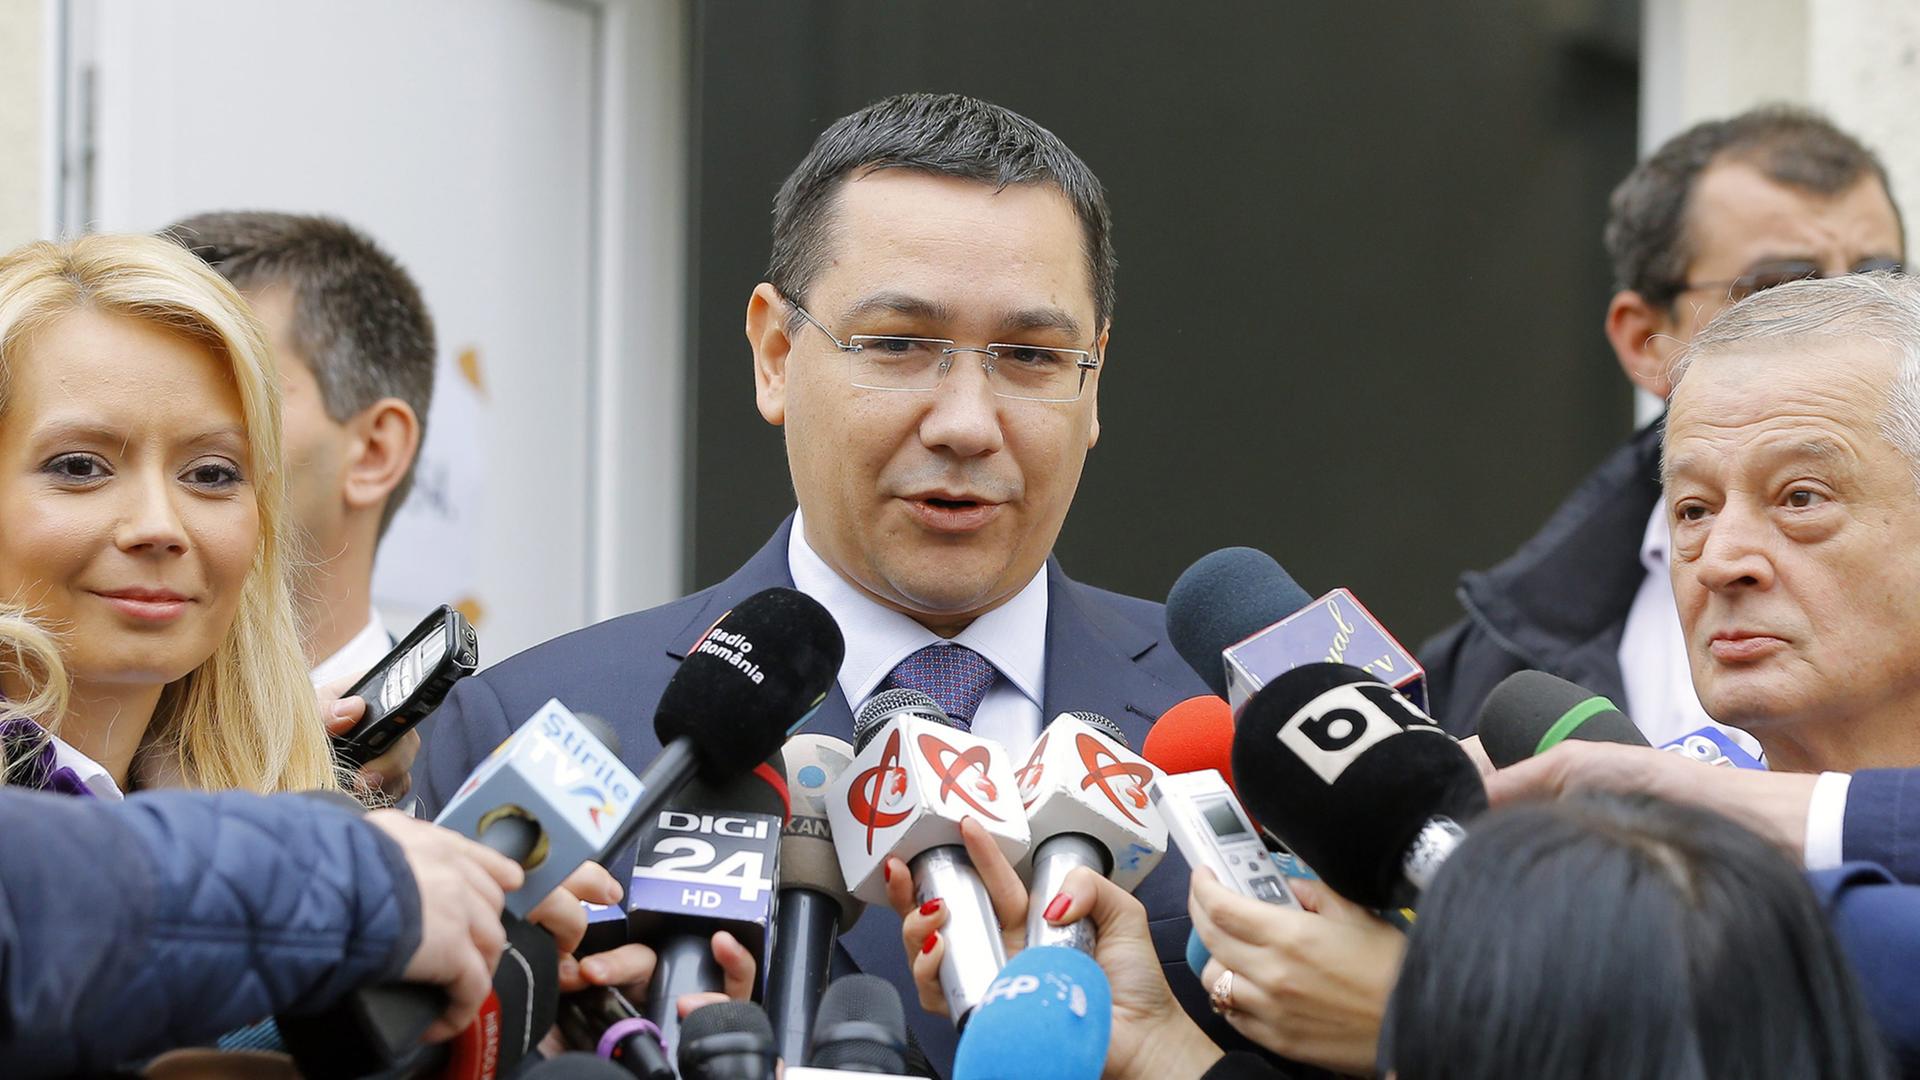 Viktor Ponta nach der Stimmabgabe